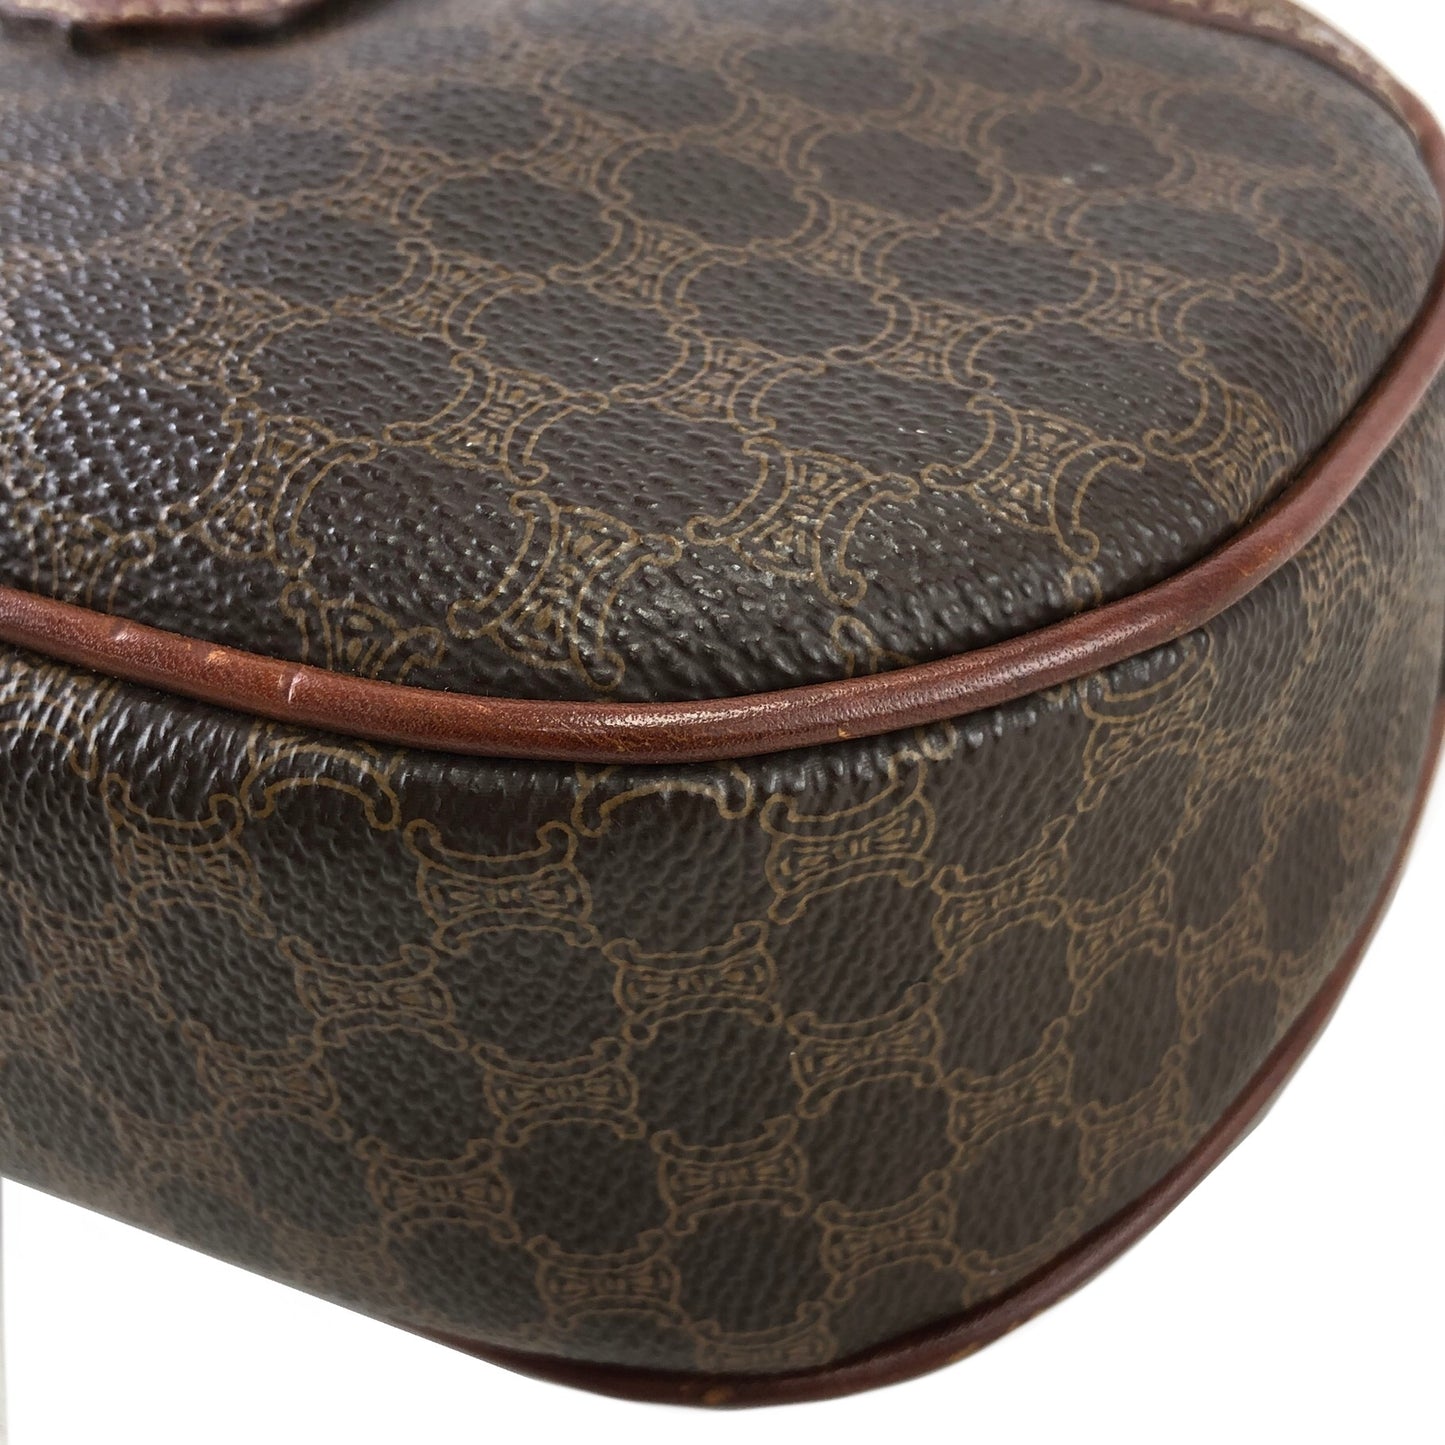 CELINE Macadam Blason Leather Shoulder bag Round bag Brown Vintage 6v63xp